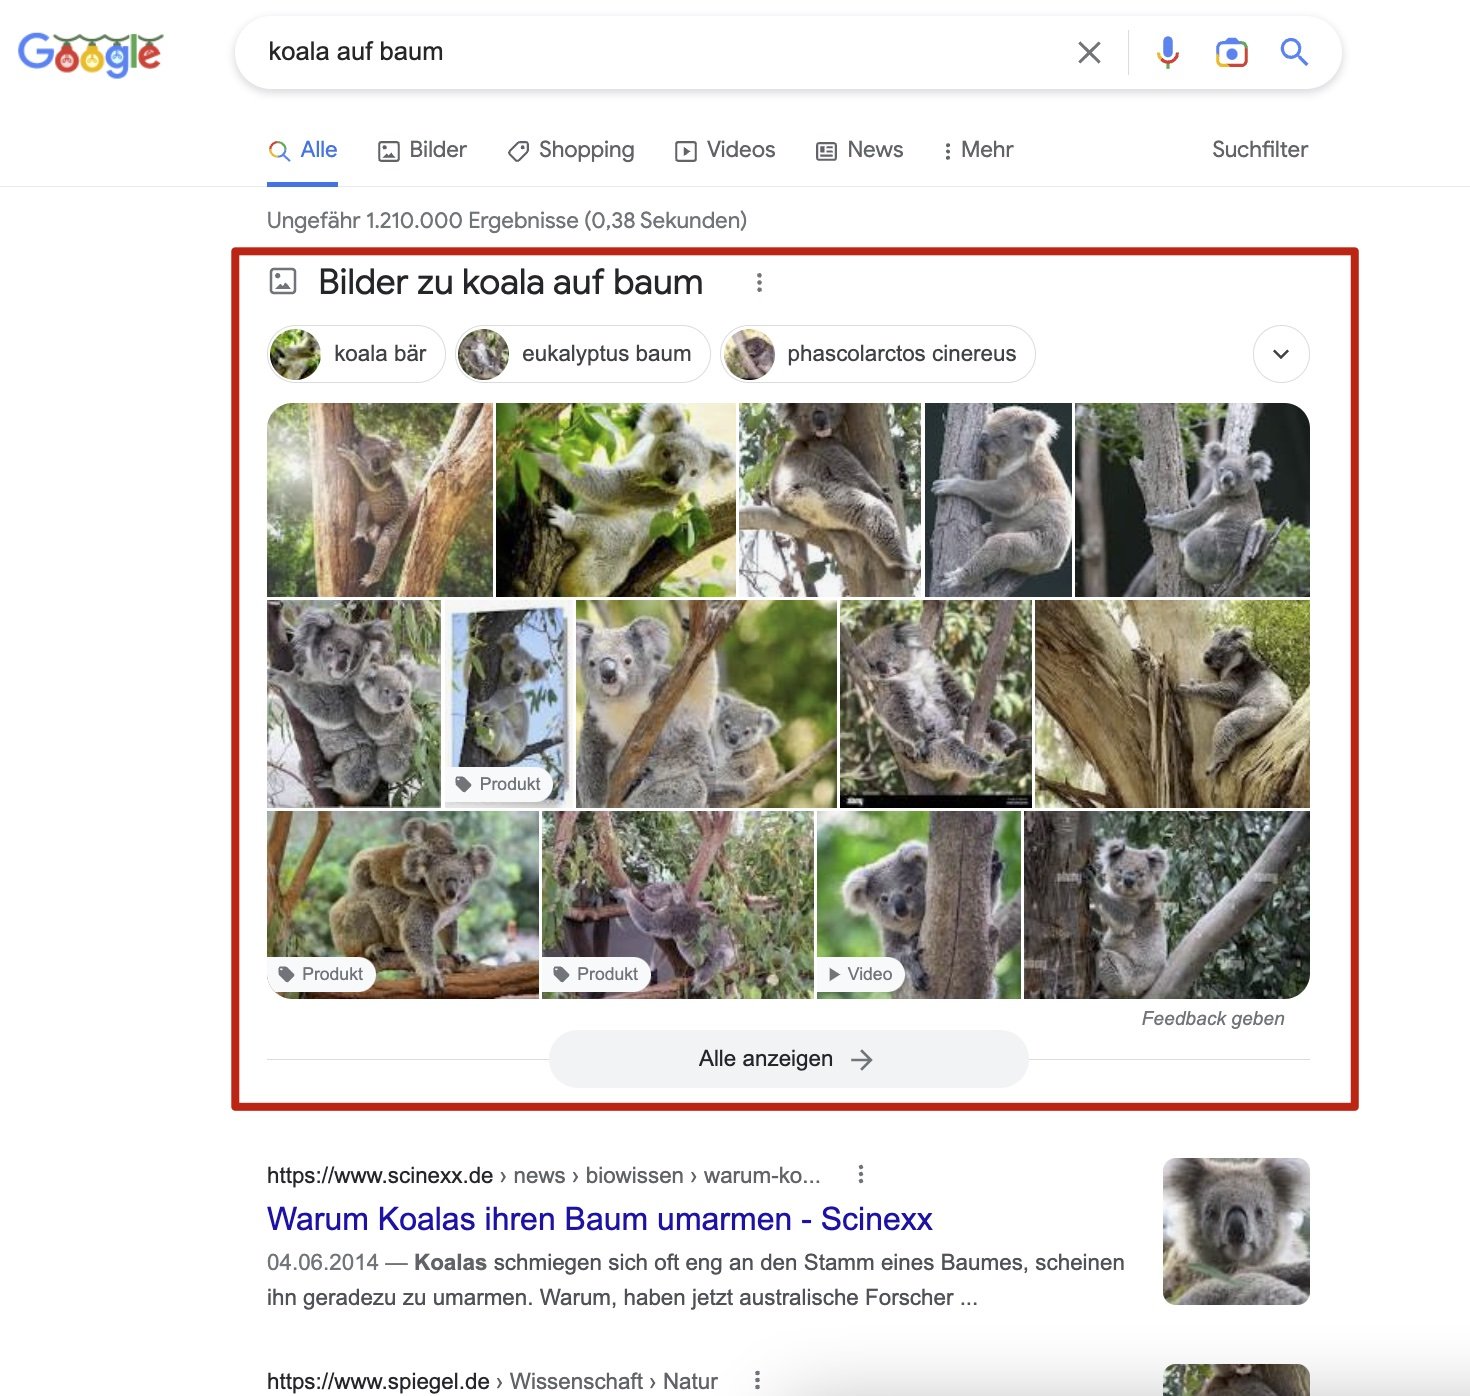 Beispiel von Image Pack in Google Suche